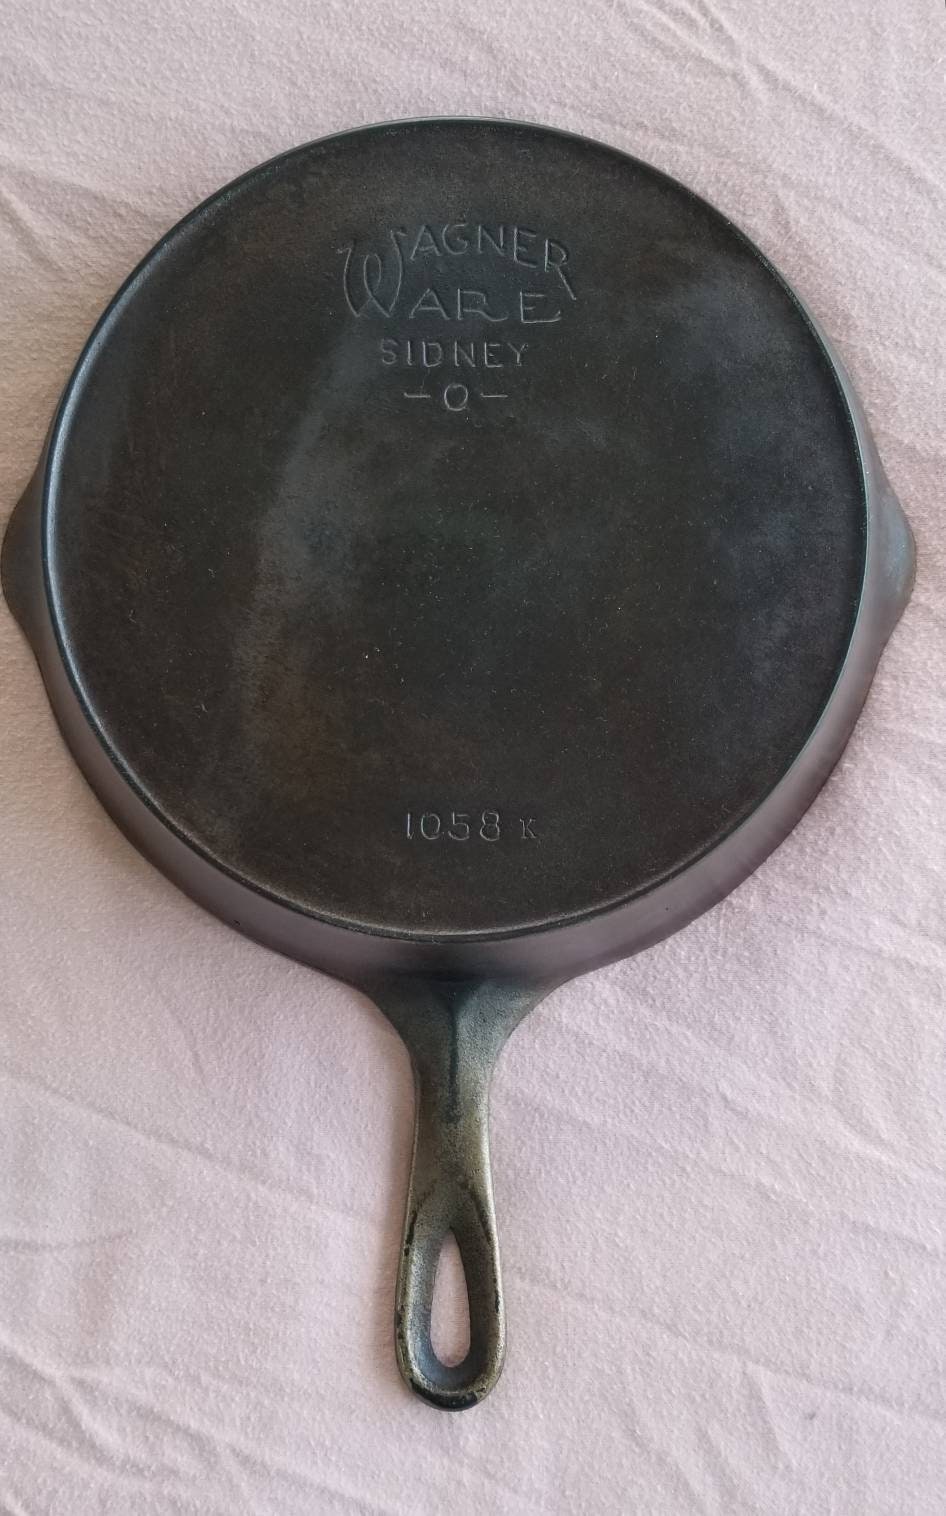 Vintage #8 Wagner Ware Sidney -O- Cast Iron Skillet 1058I Large 10 Frying  Pan